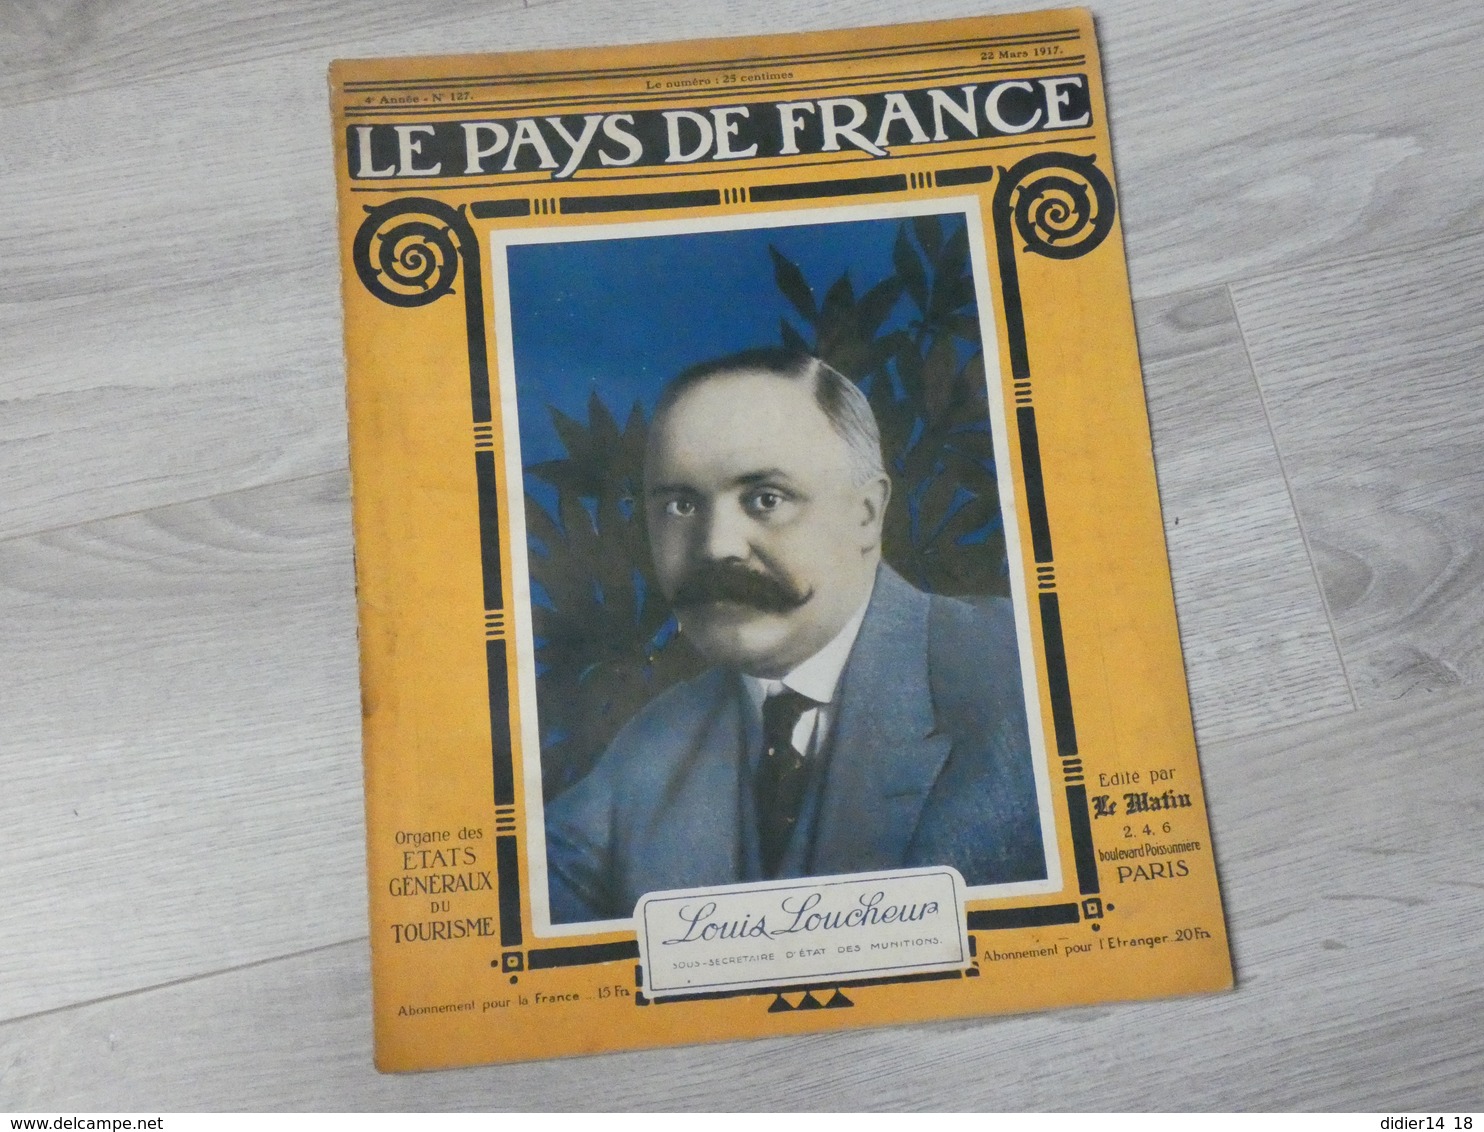 PAYS DE FRANCE N°127 . 22 MARS 1917. LOUIS LOUCHEUR SOUS SECRETAIRE D'ETAT DES MUNITIONS. - Français